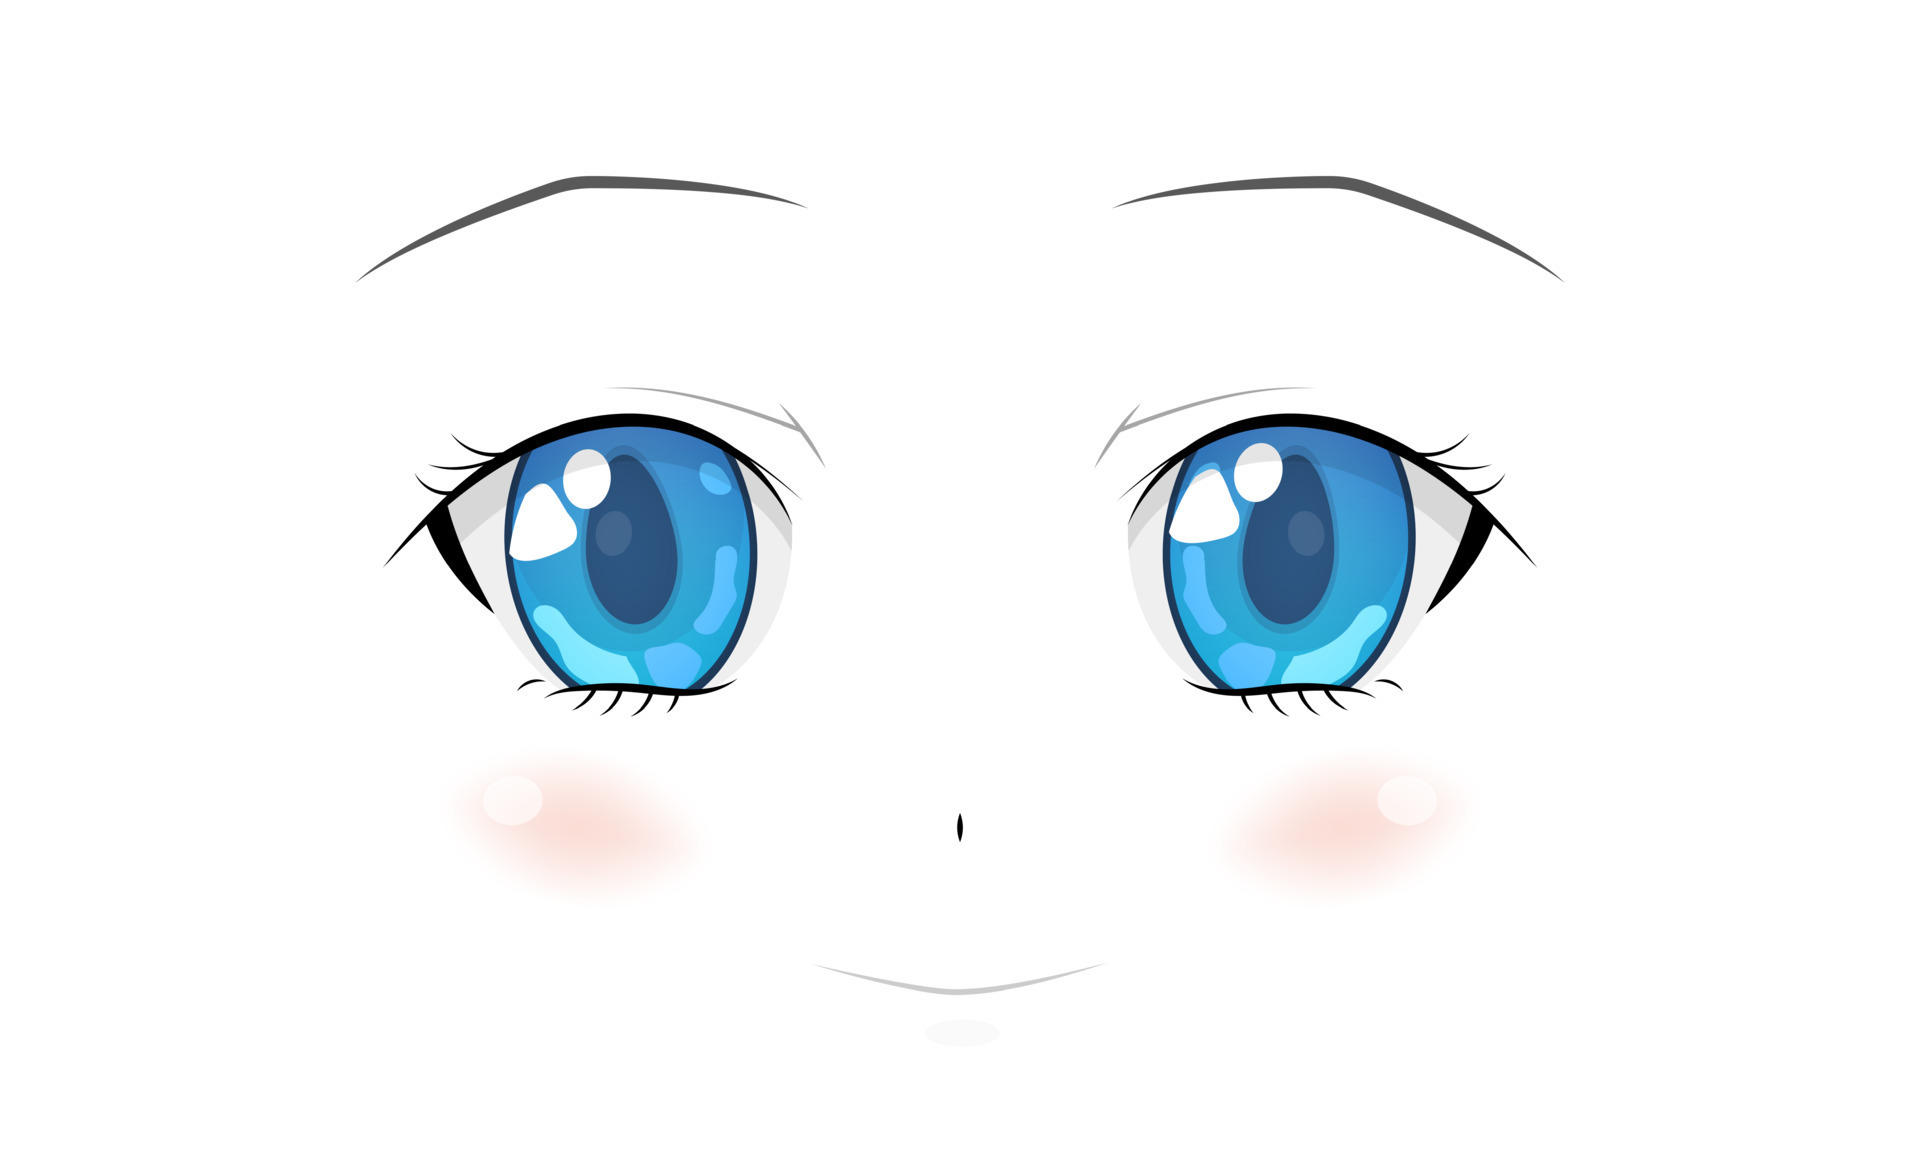 Rosto de anime com medo. olhos engraçados de estilo mangá, nariz pequeno e boca  kawaii. mão-extraídas ilustração dos desenhos animados do vetor.